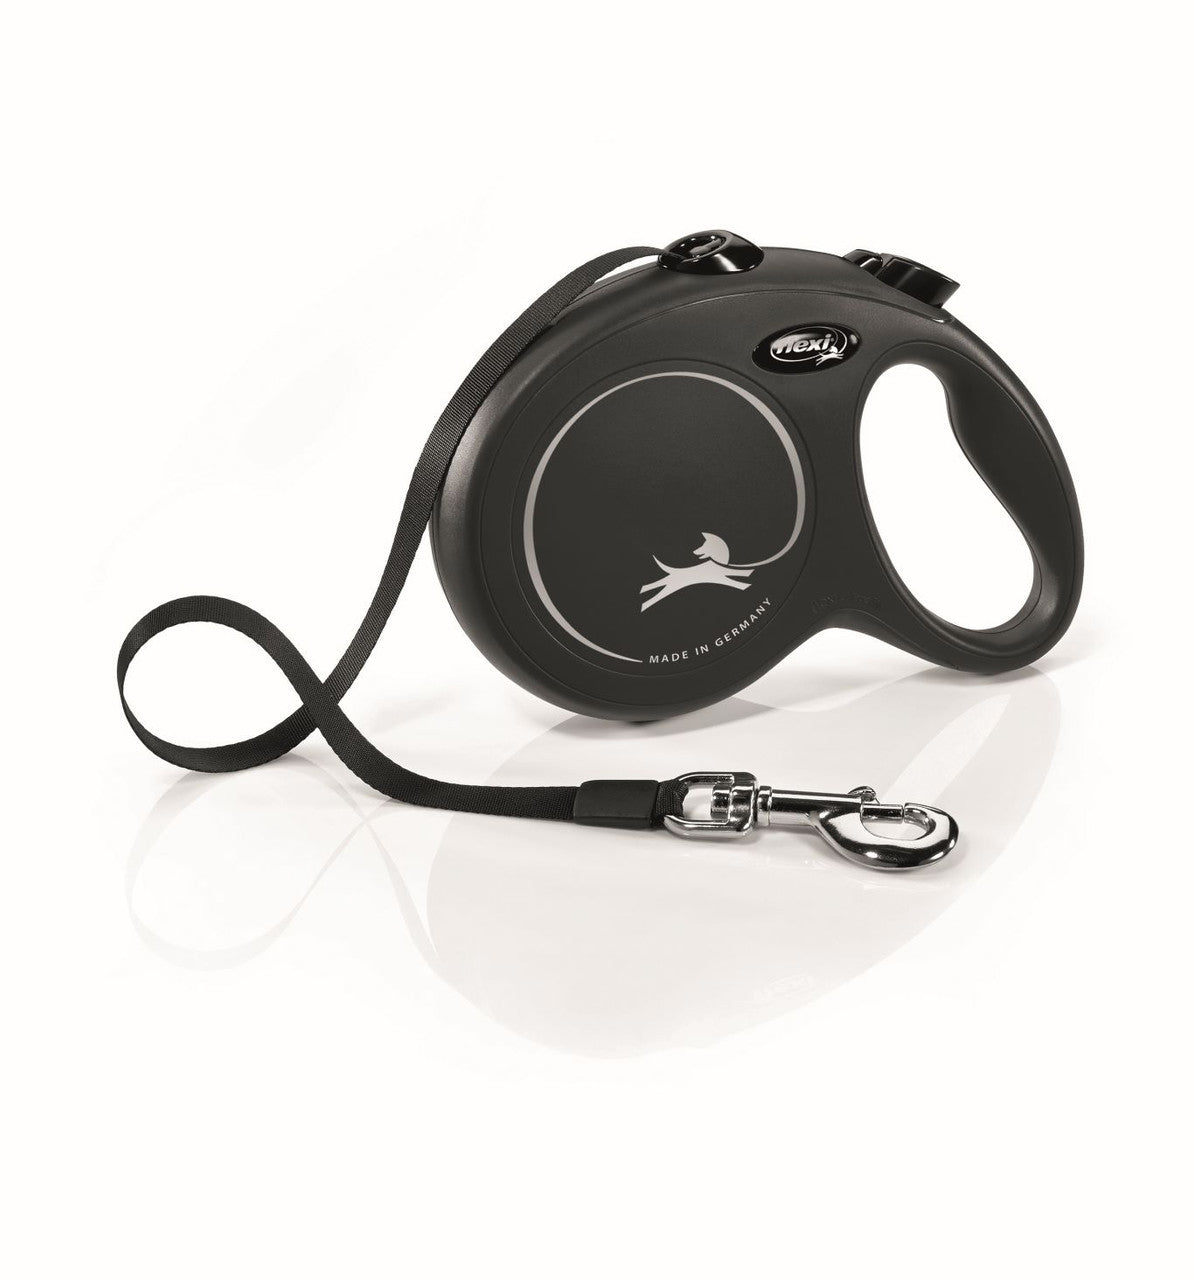 Flexi Flexi Classic Nylon Cord Dog Leash Black 16ft LG up to 132lb